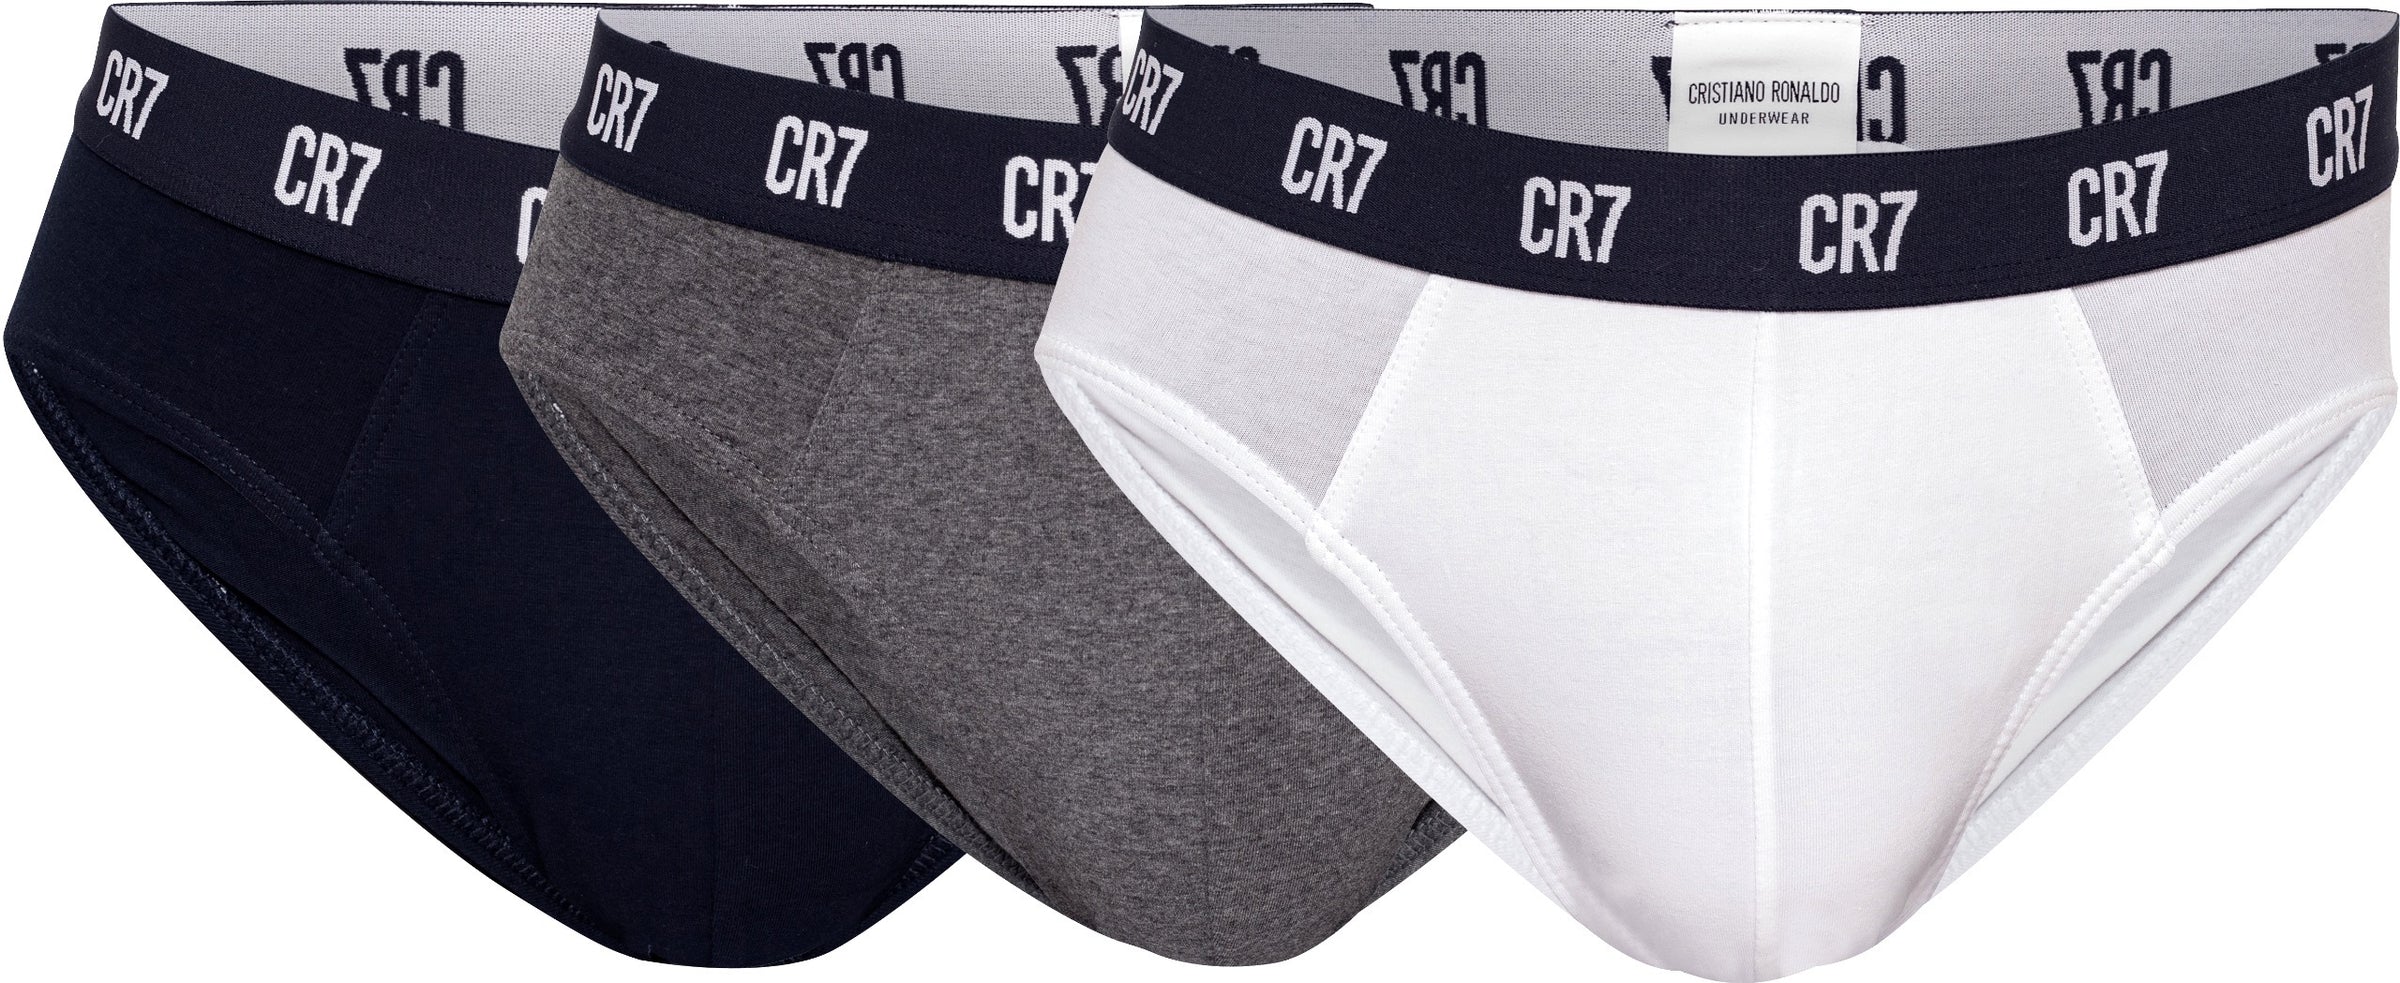 CR7 Cristiano Ronaldo Men’s Underwear Longjohns Base Layer 830